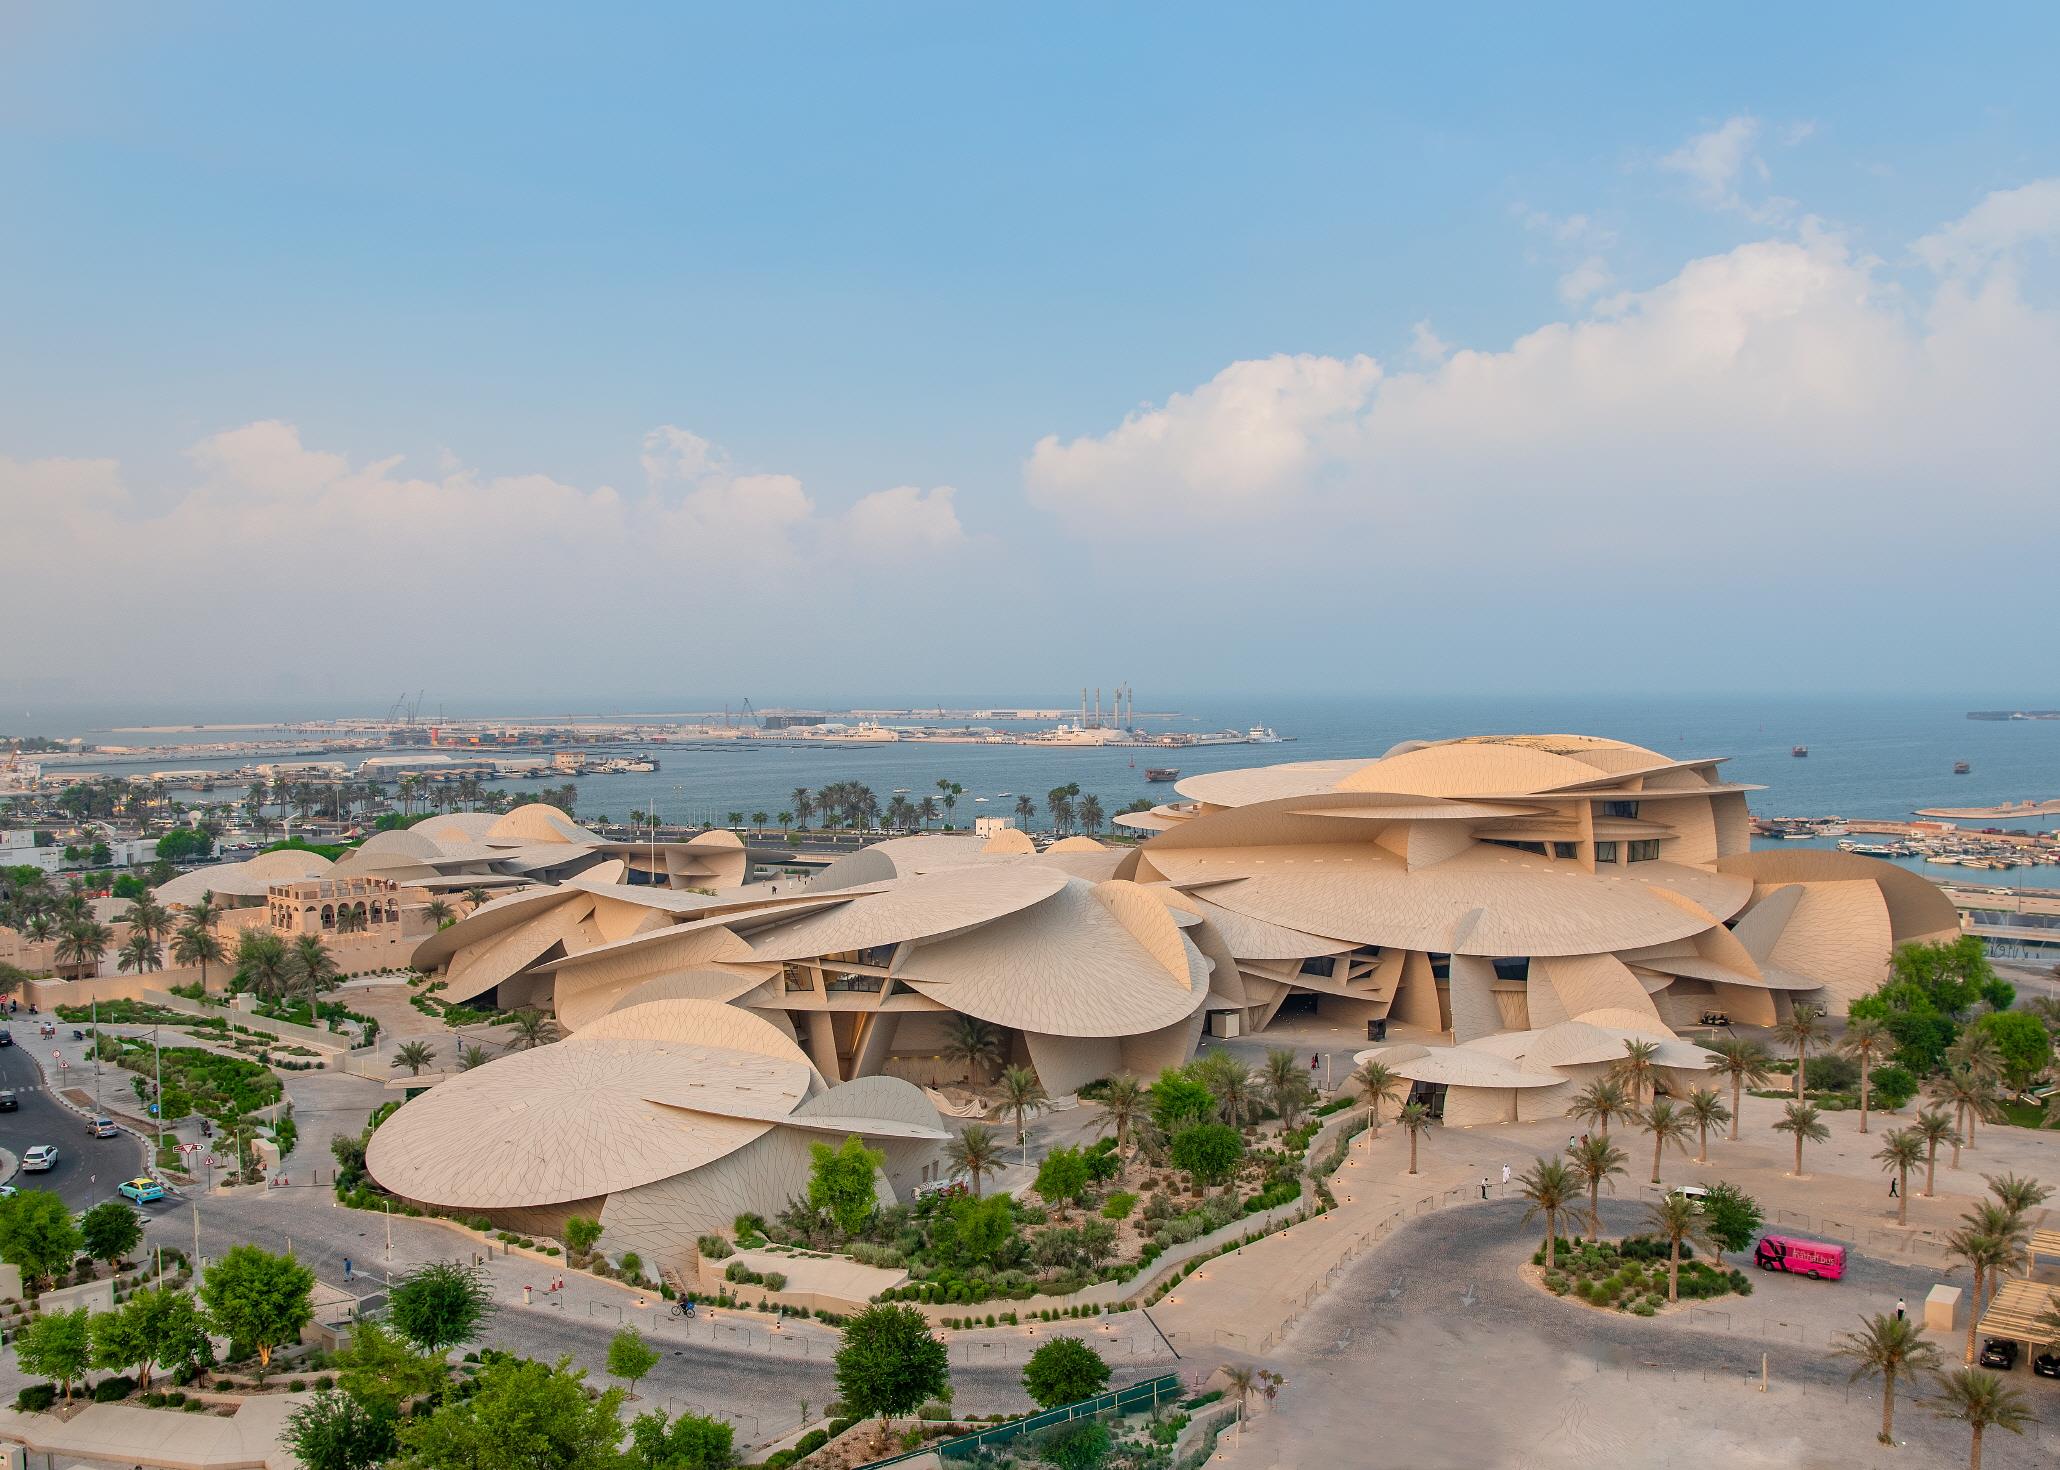 카타르 국립박물관  National Museum of Qatar